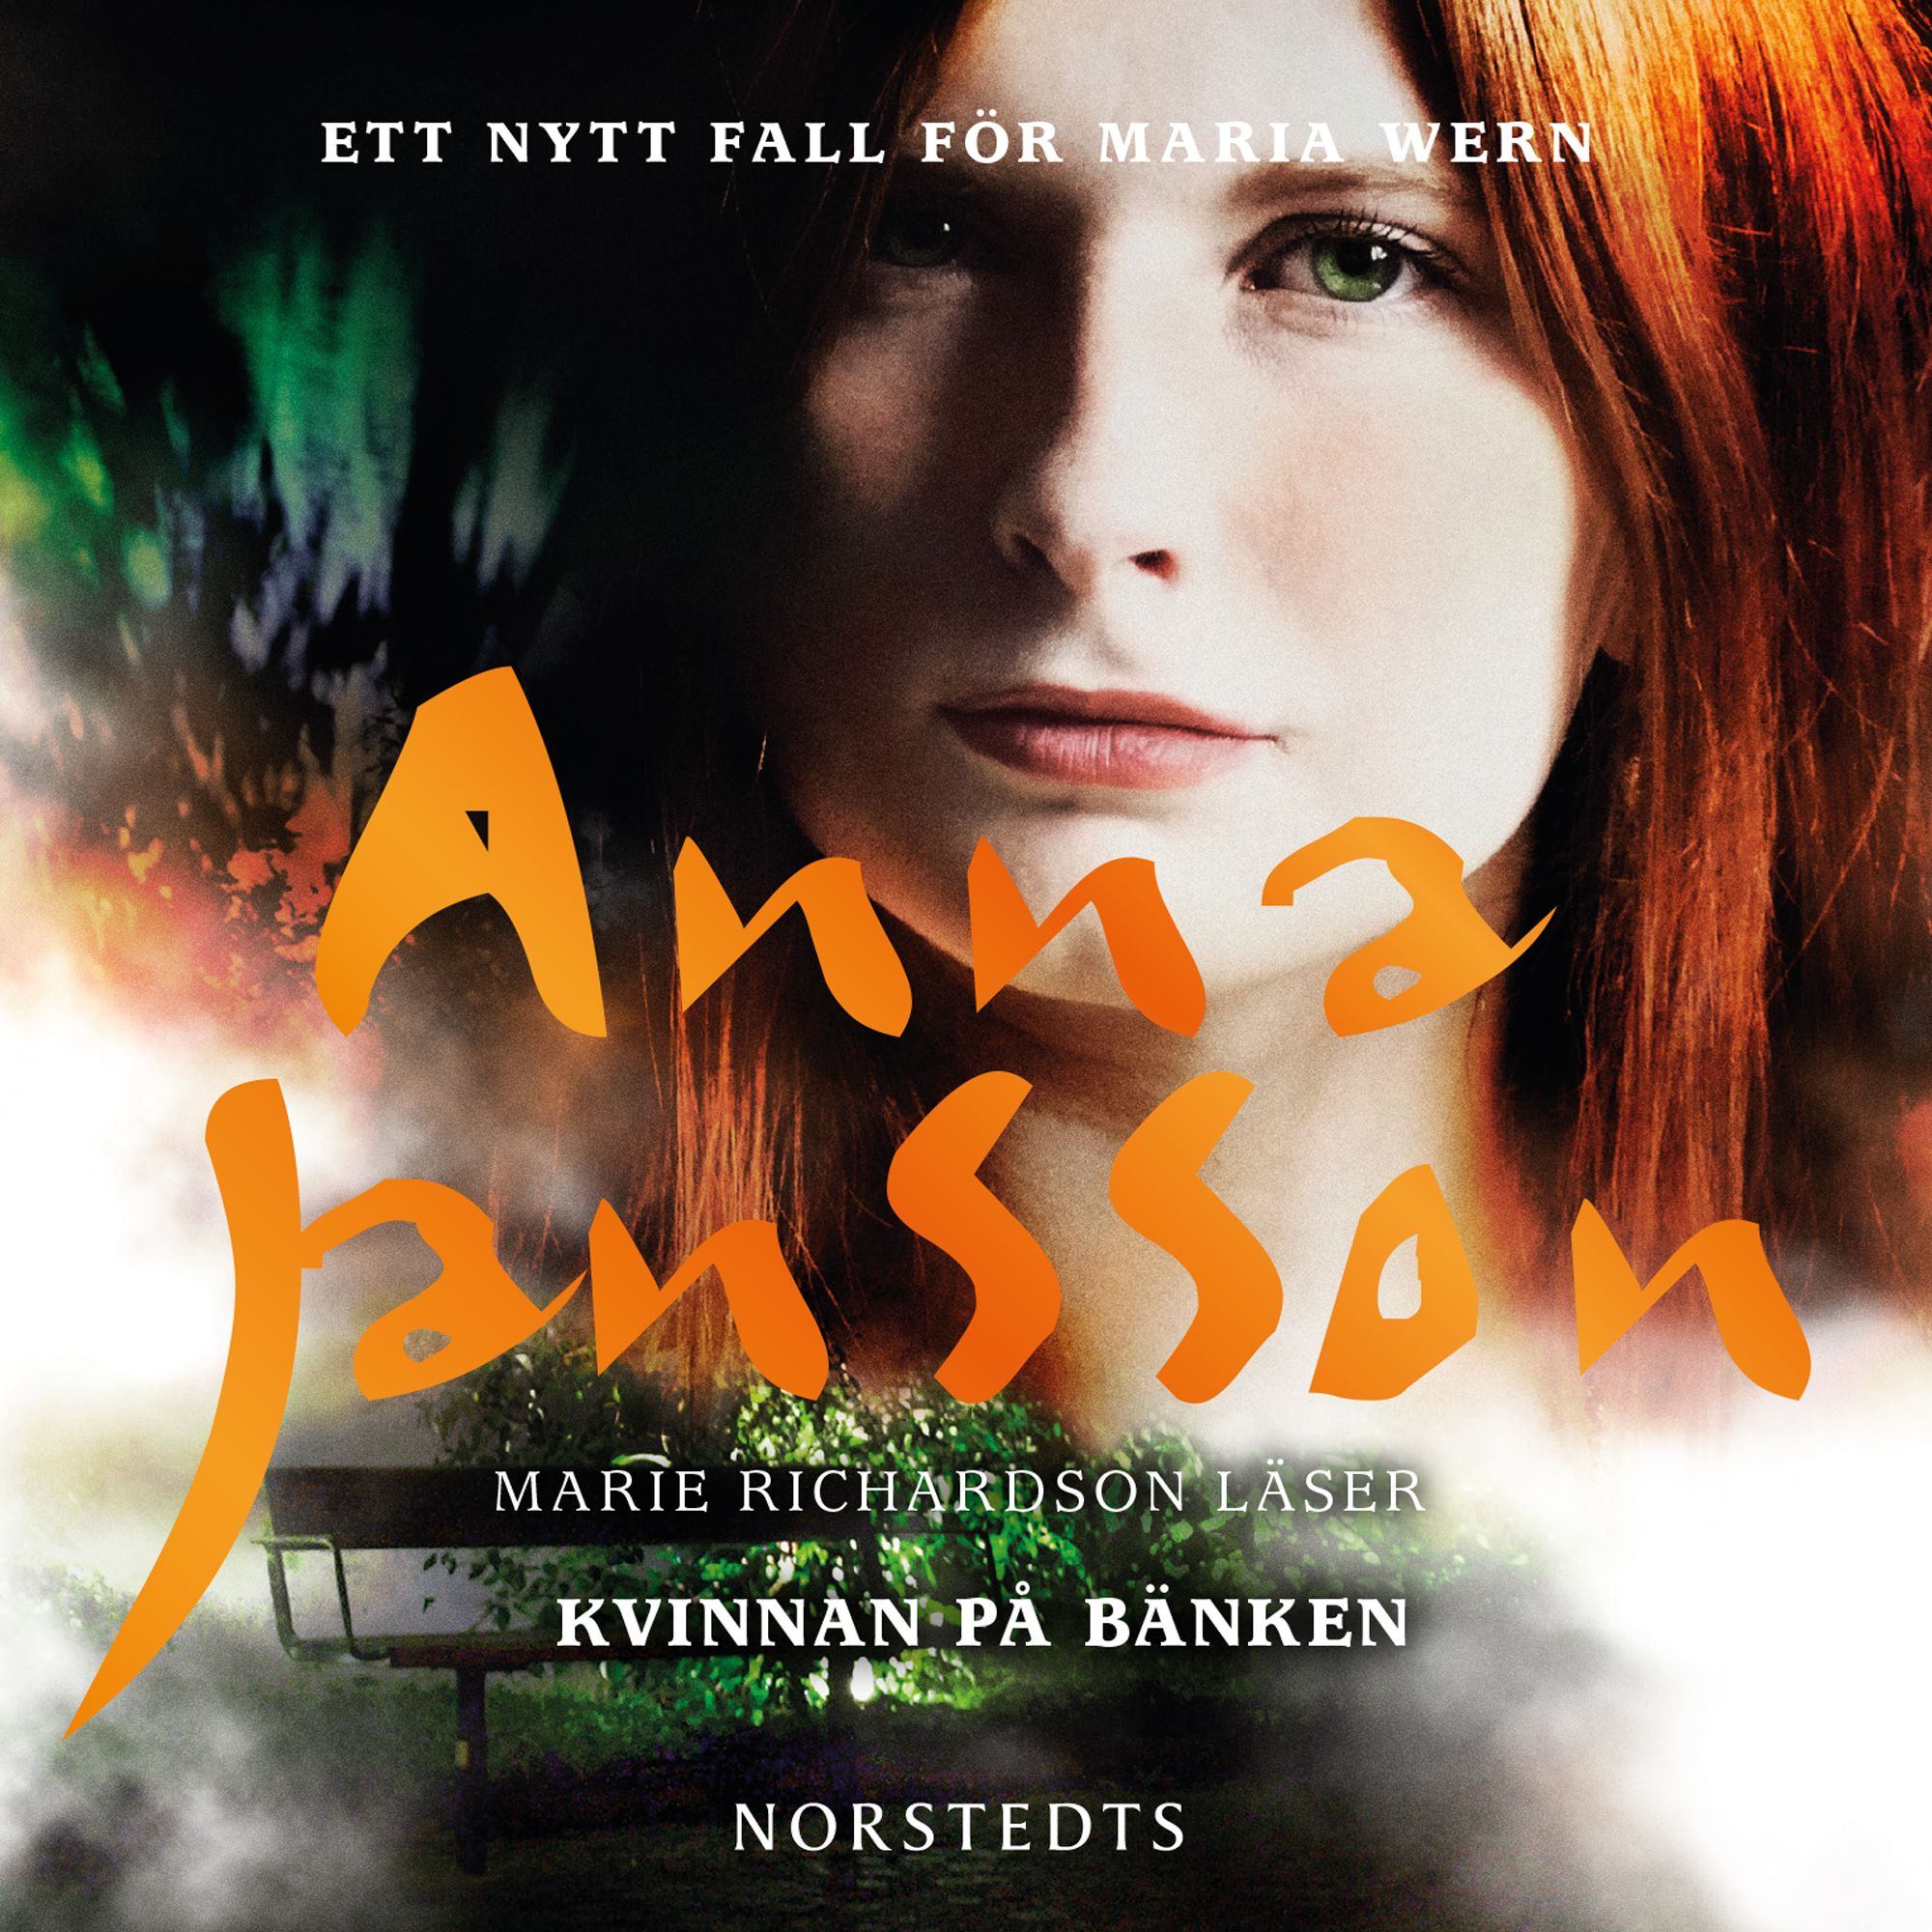 Kvinnan på bänken, ljudbok av Anna Jansson